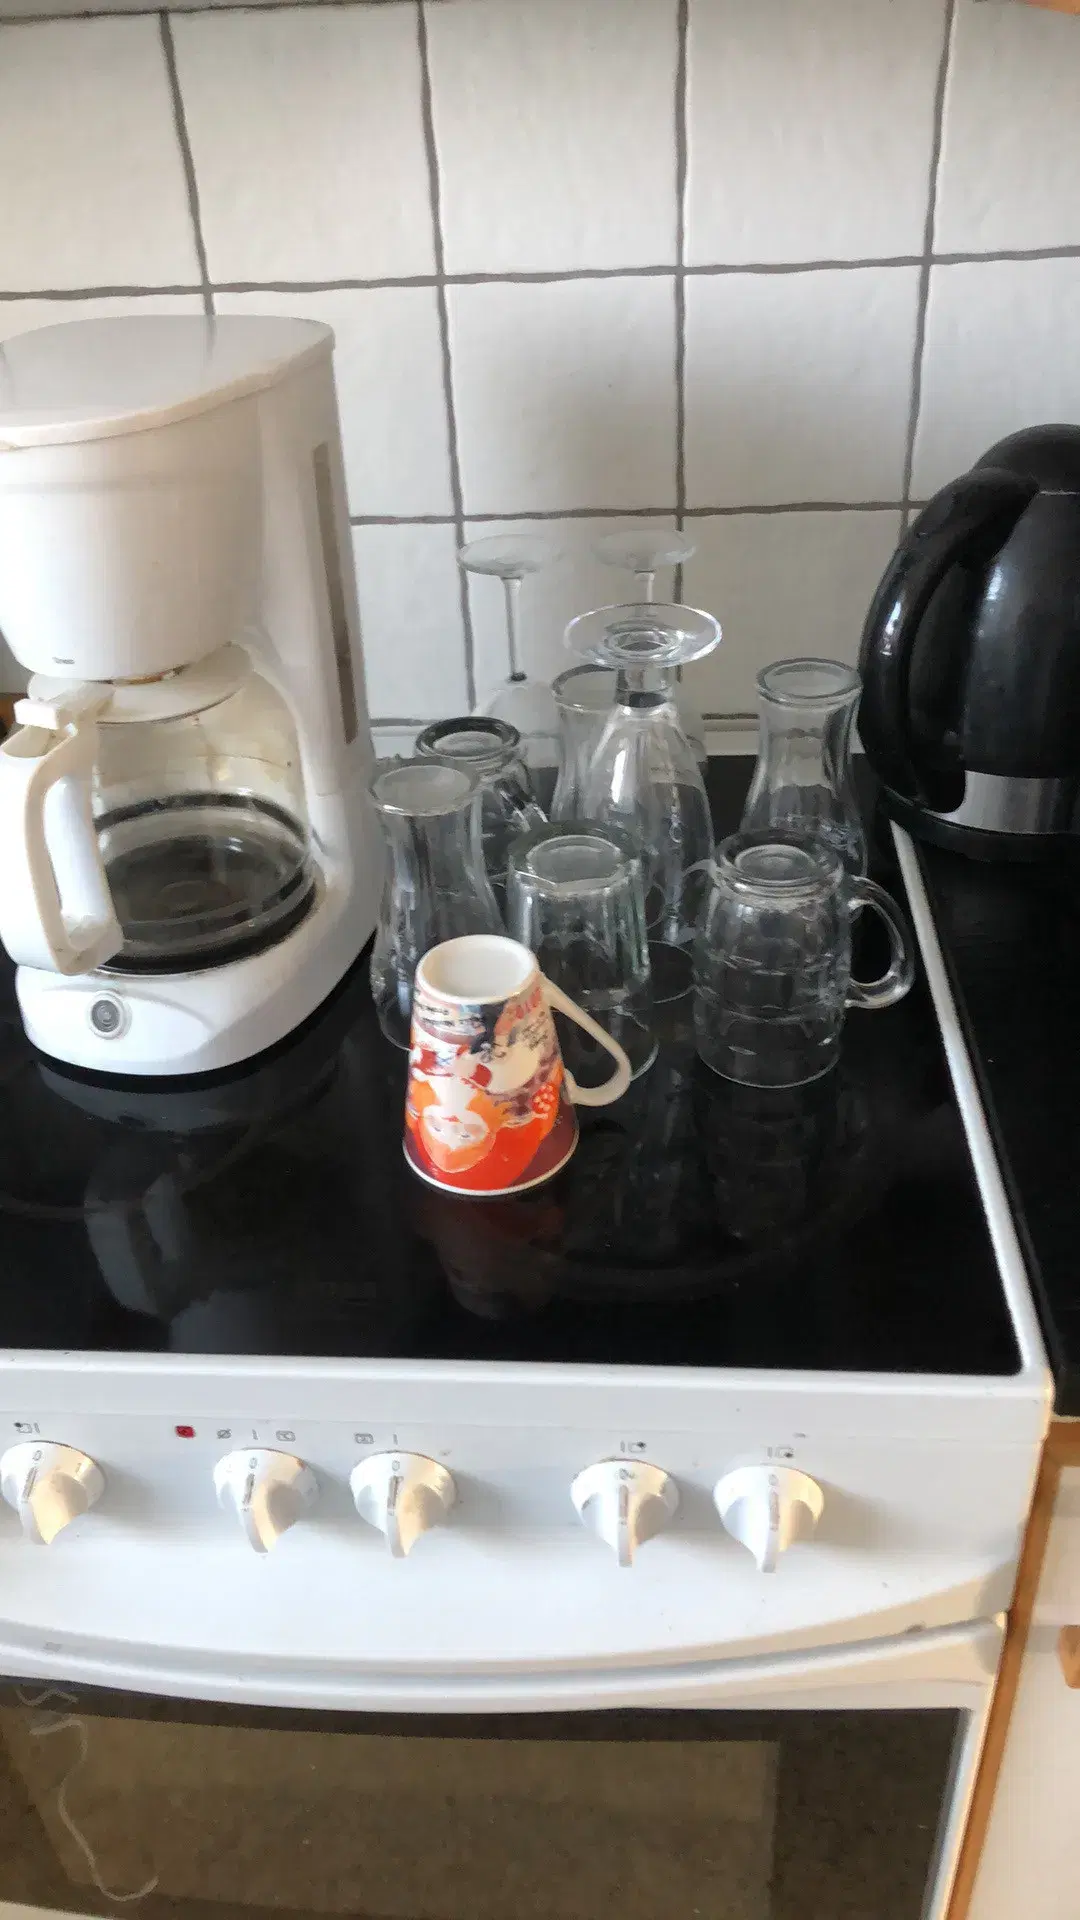 Linea kaffemaskine plus glas hurigt salg